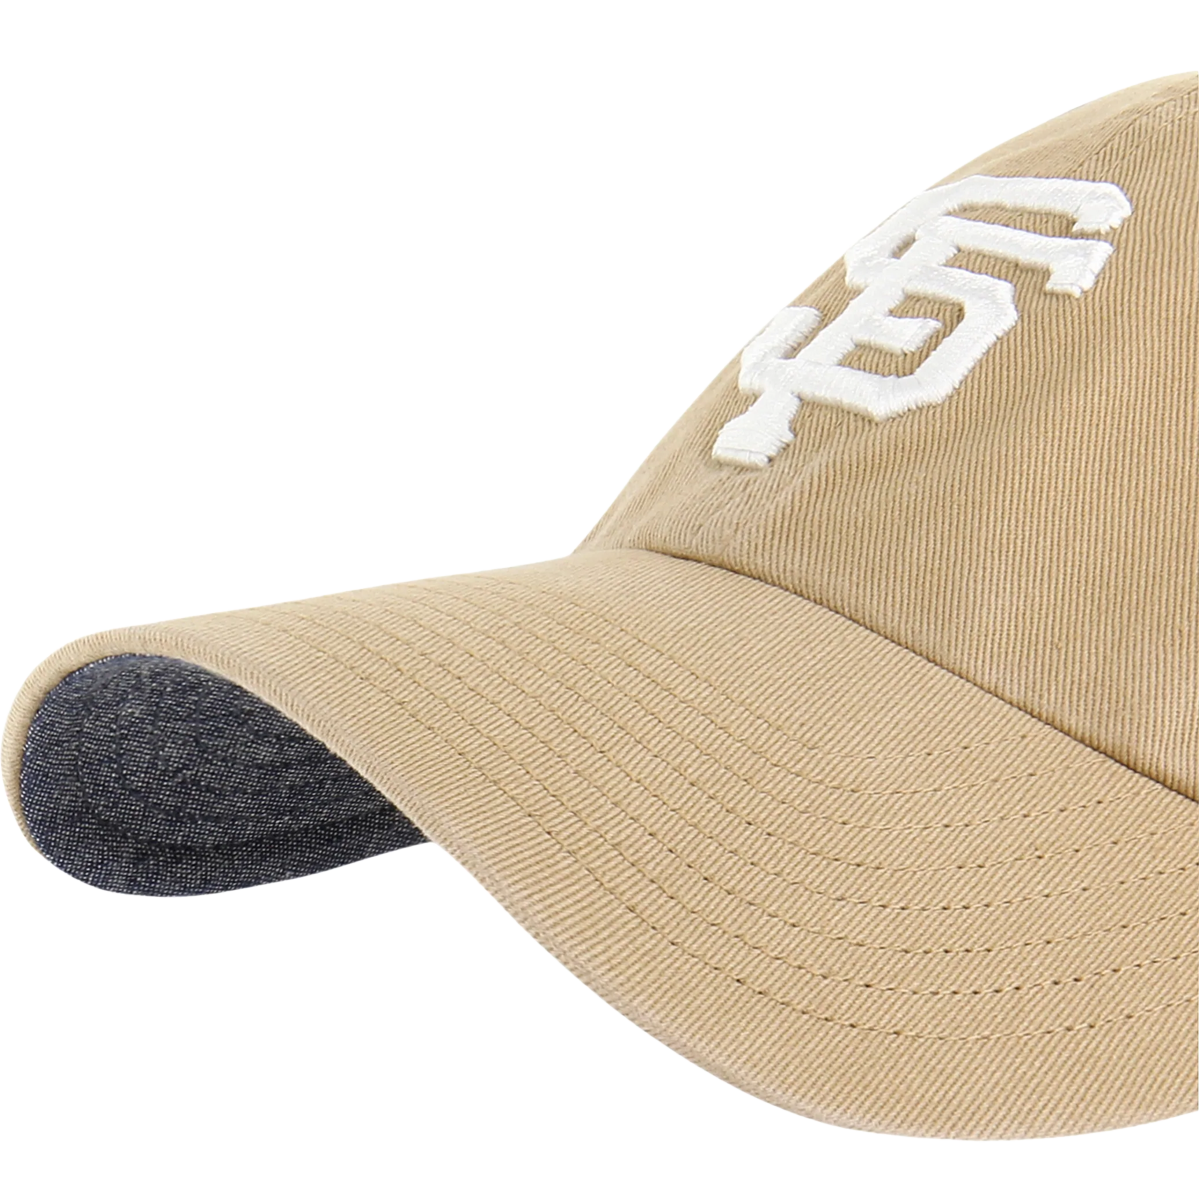 sf giants hat 47